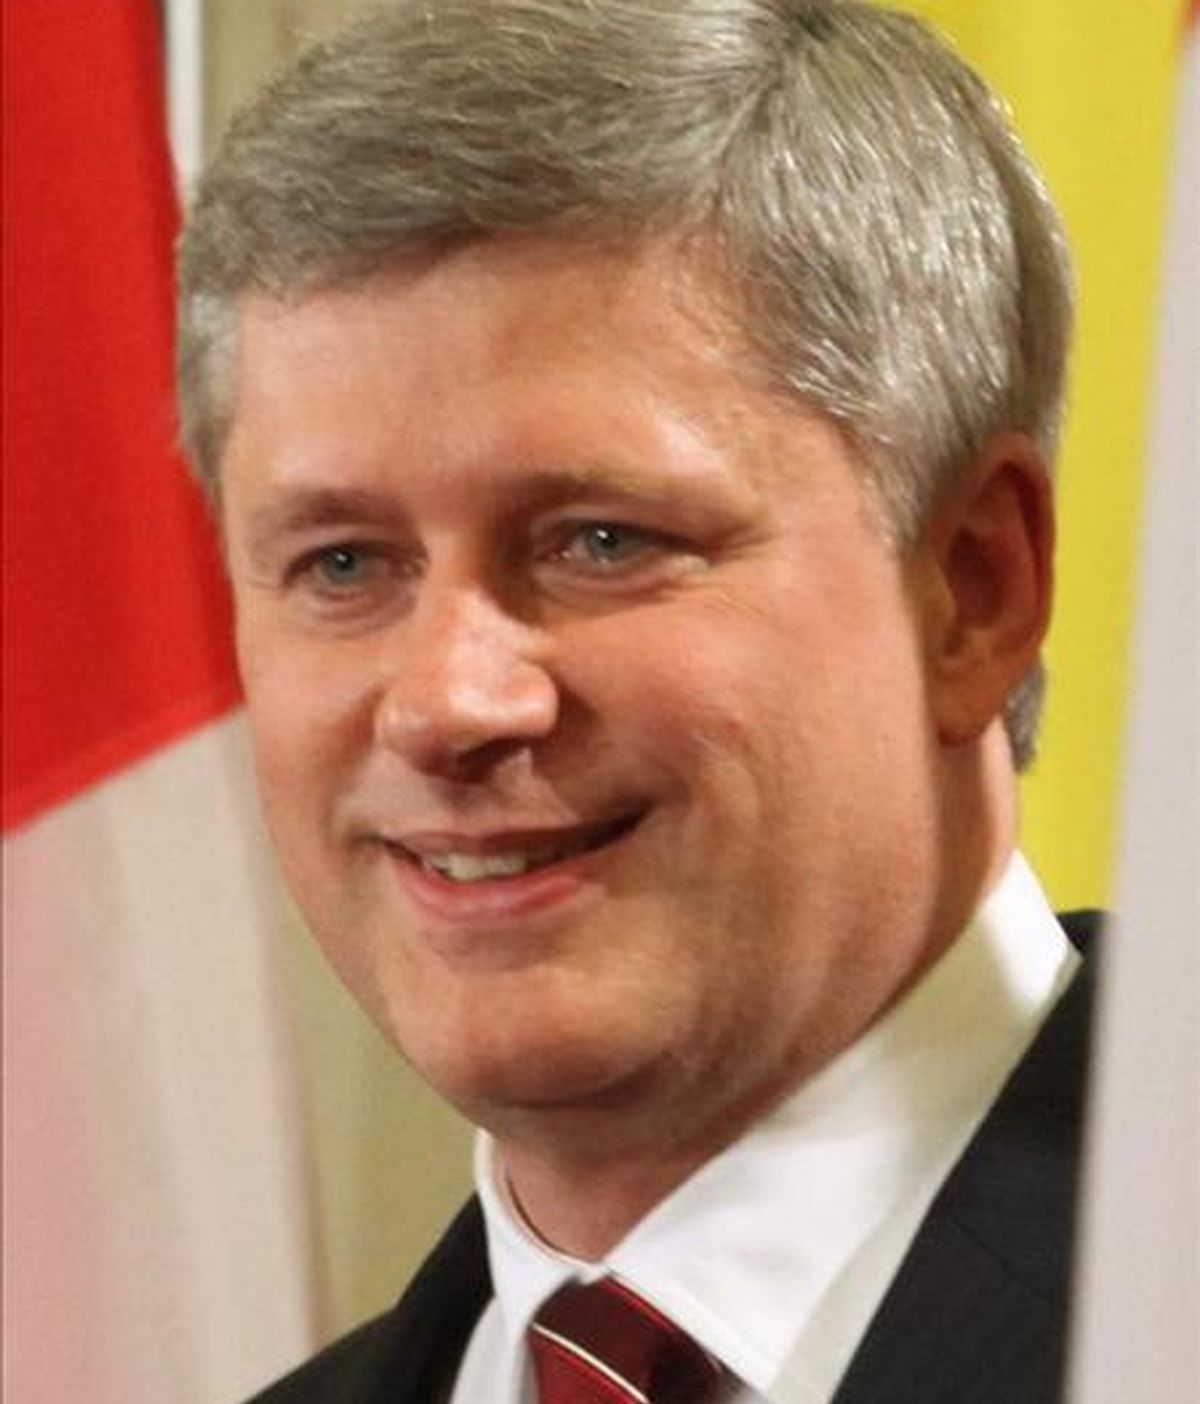 El primer ministro canadiense, Stephen Harper (en la imagen), gobierna en minoría desde las elecciones generales de octubre de 2008. EFE/Archivo